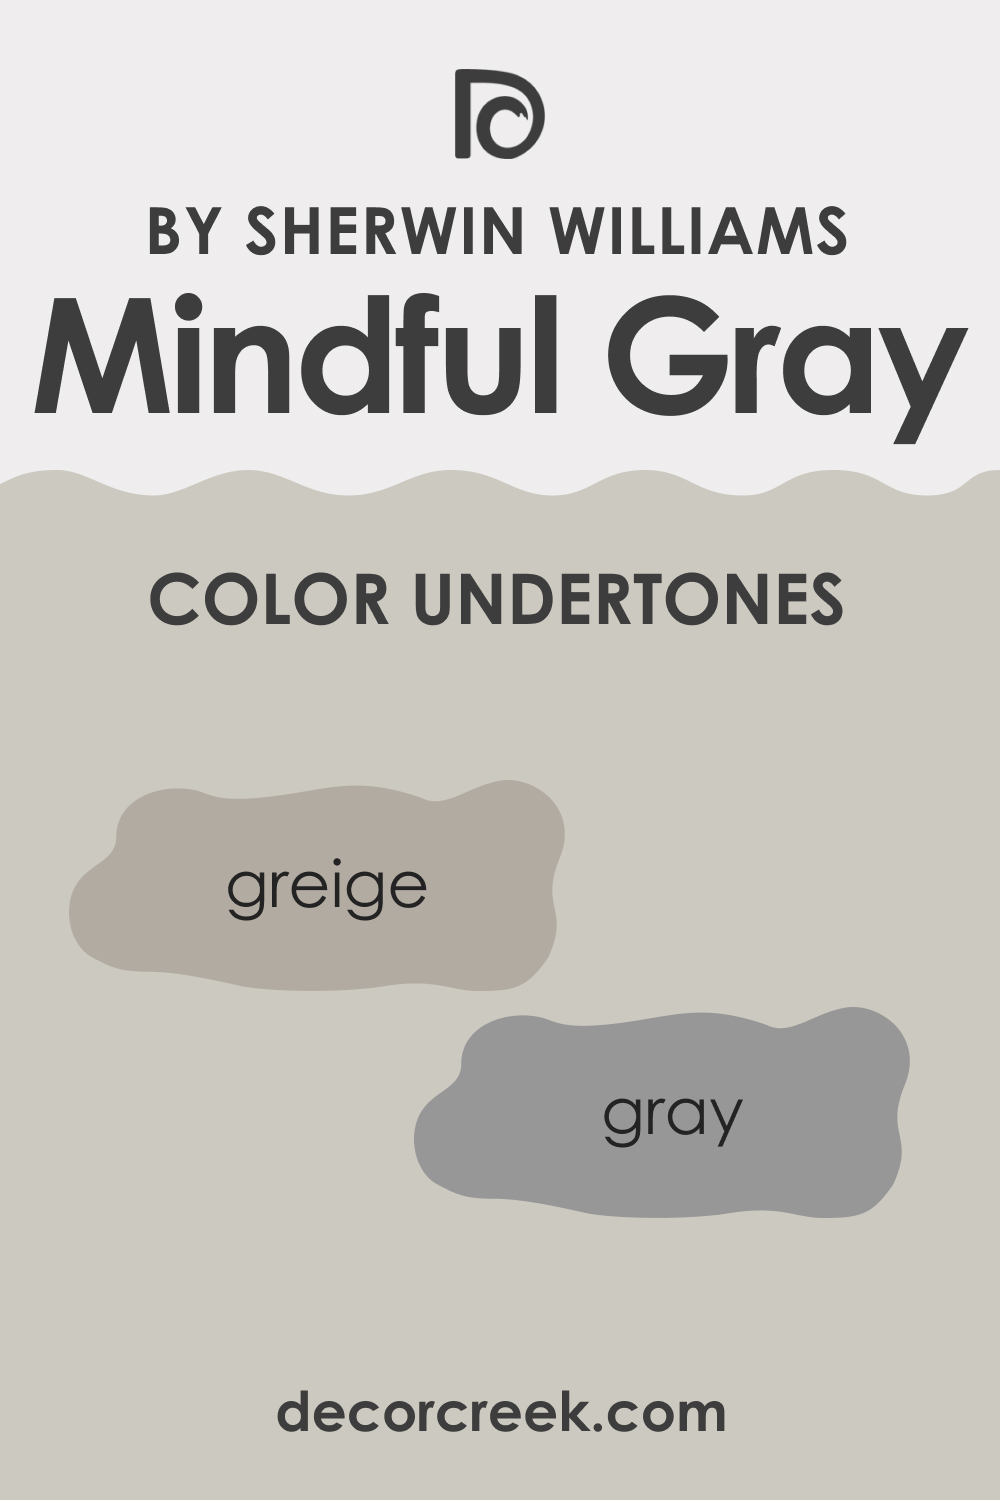 Undertones of SW 7016 Mindful Gray